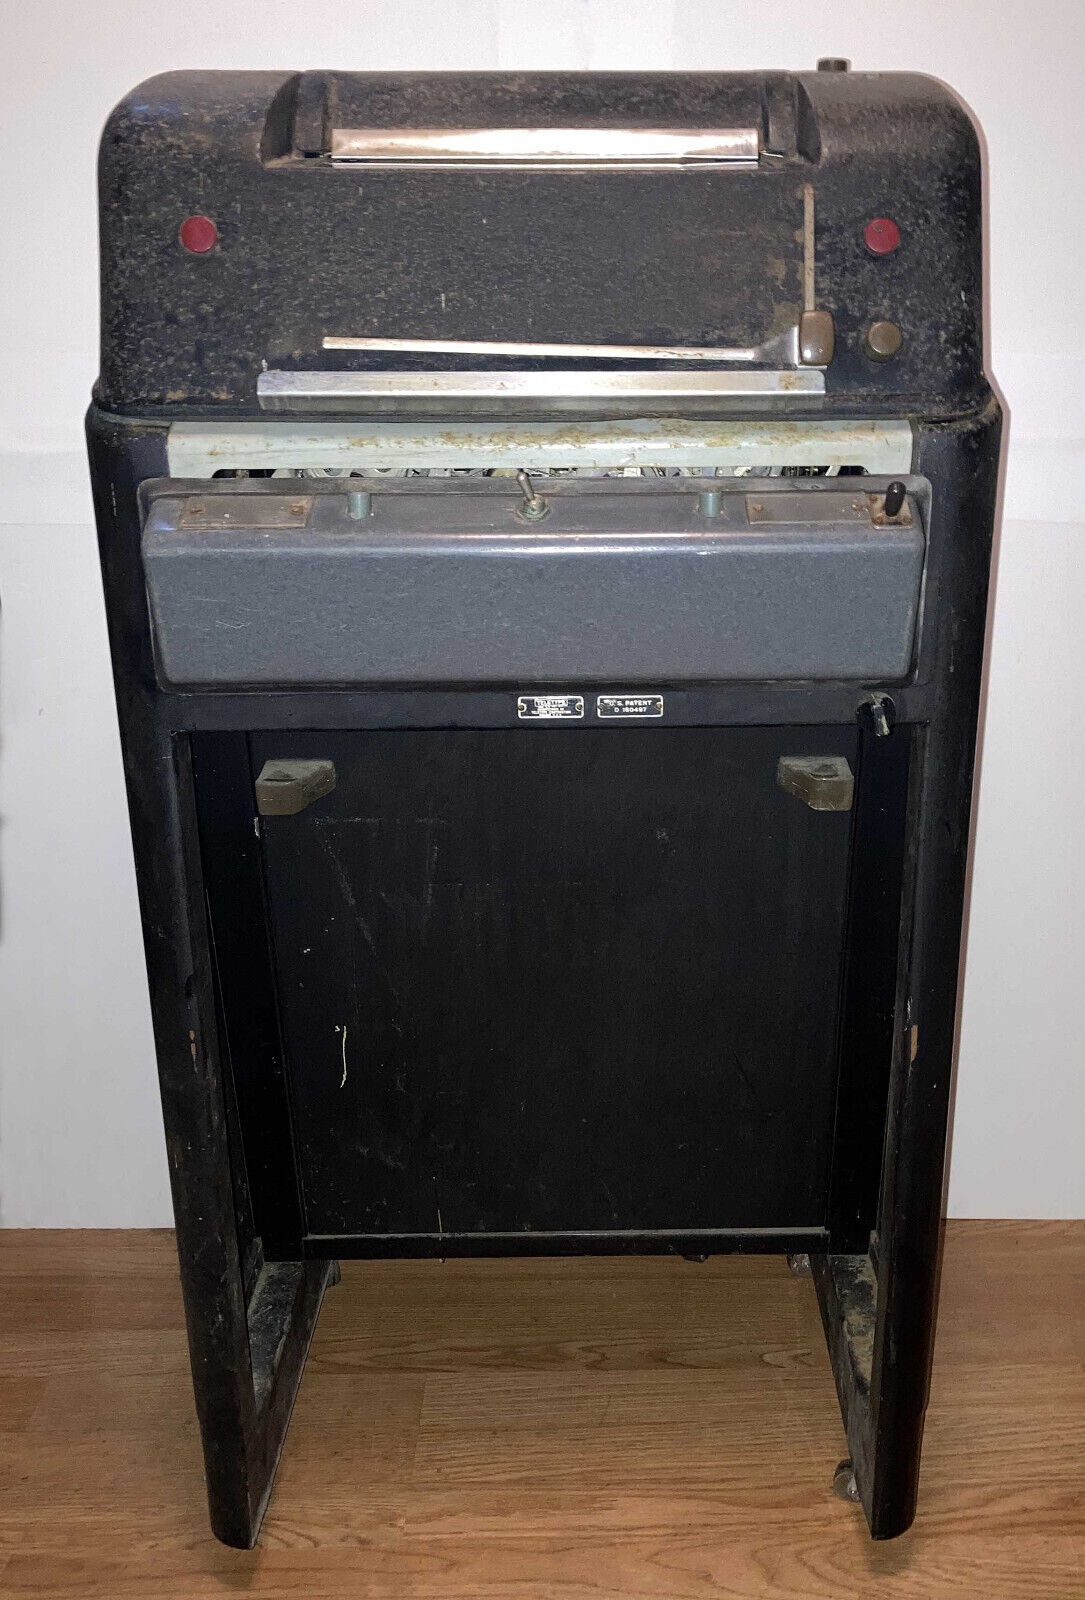 Teletype Model 28-RO - Teletypewriter - Receive Only